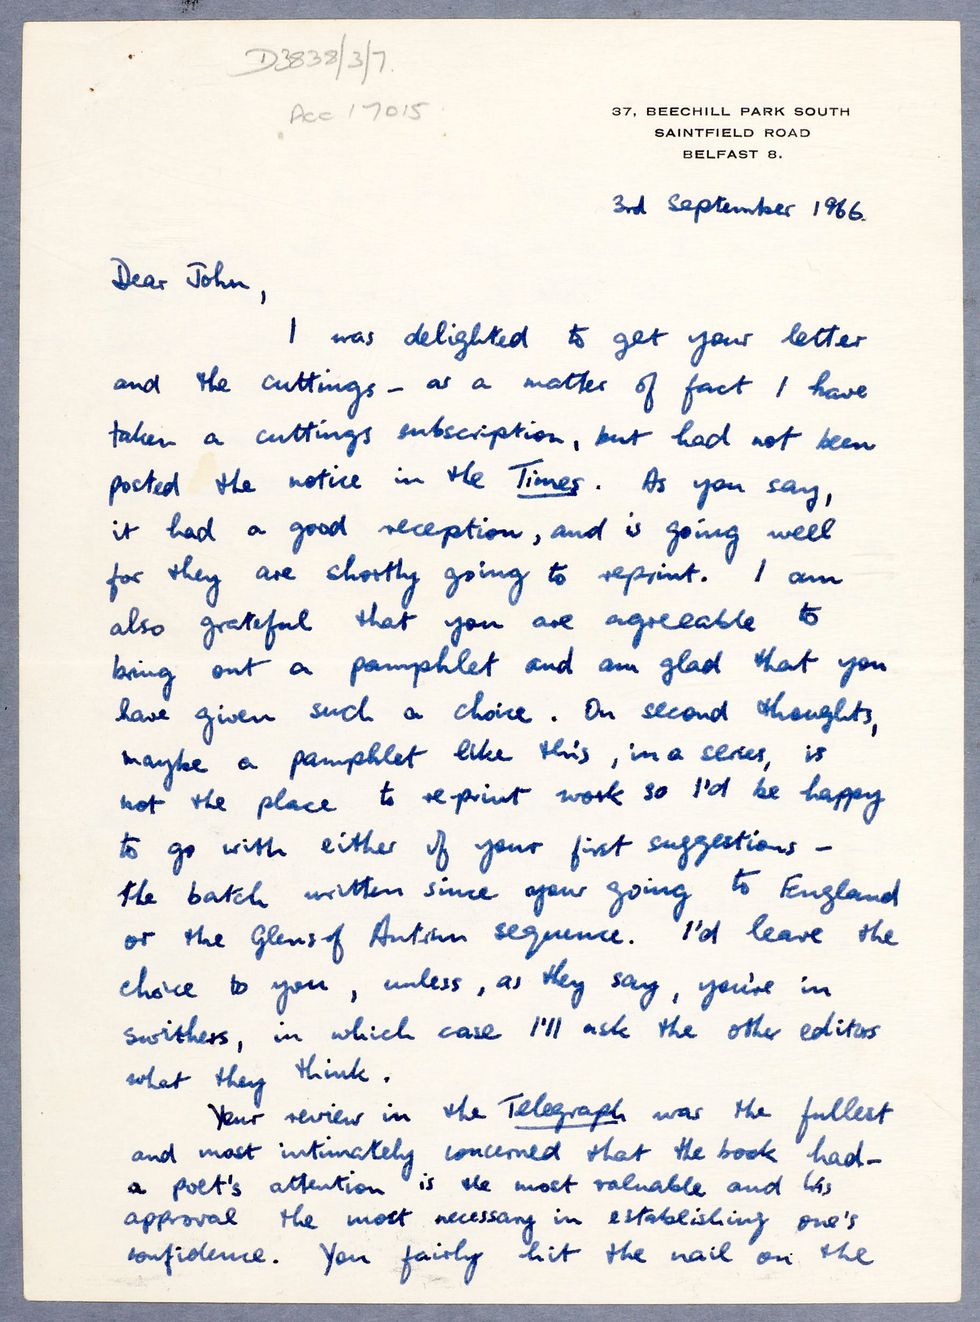 Seamus Heaney\u2019s letter to John Hewitt in September 1966